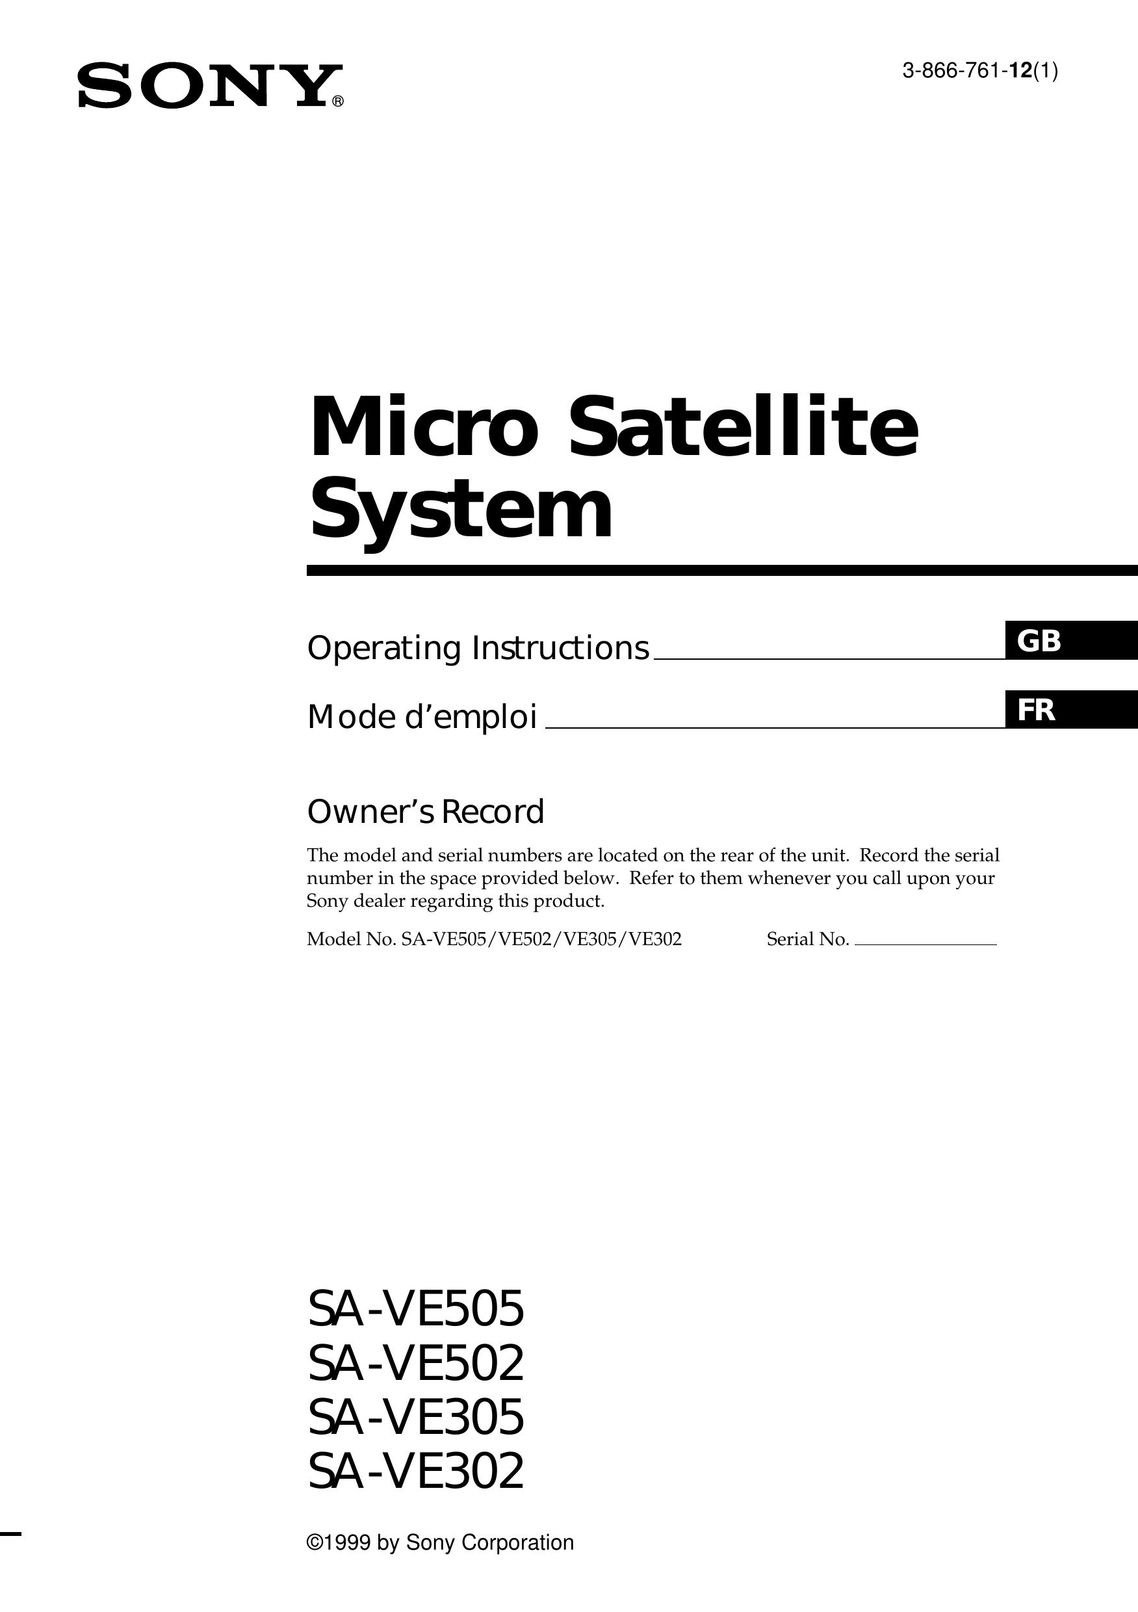 Sony SA-VE305 Satellite TV System User Manual